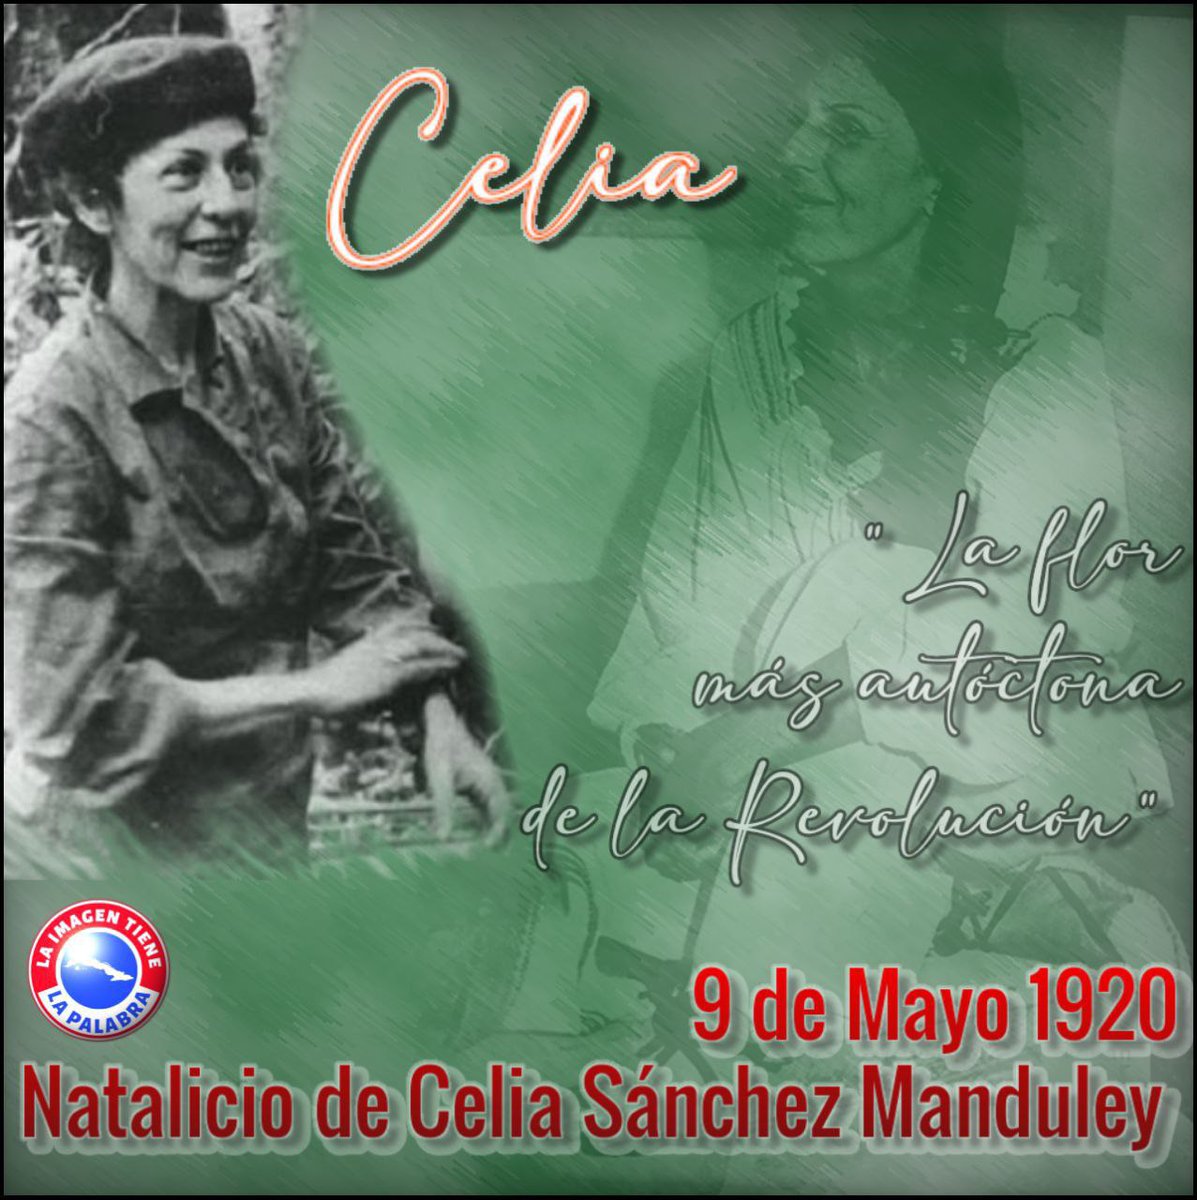 #Cuba y todo nuestro pueblo recuerda con cariño y rinde tributo a la mujer extraordinaria Celia Sánchez Manduley en el 104 aniversario de su natalicio. #CubaViveEnSuHistoria